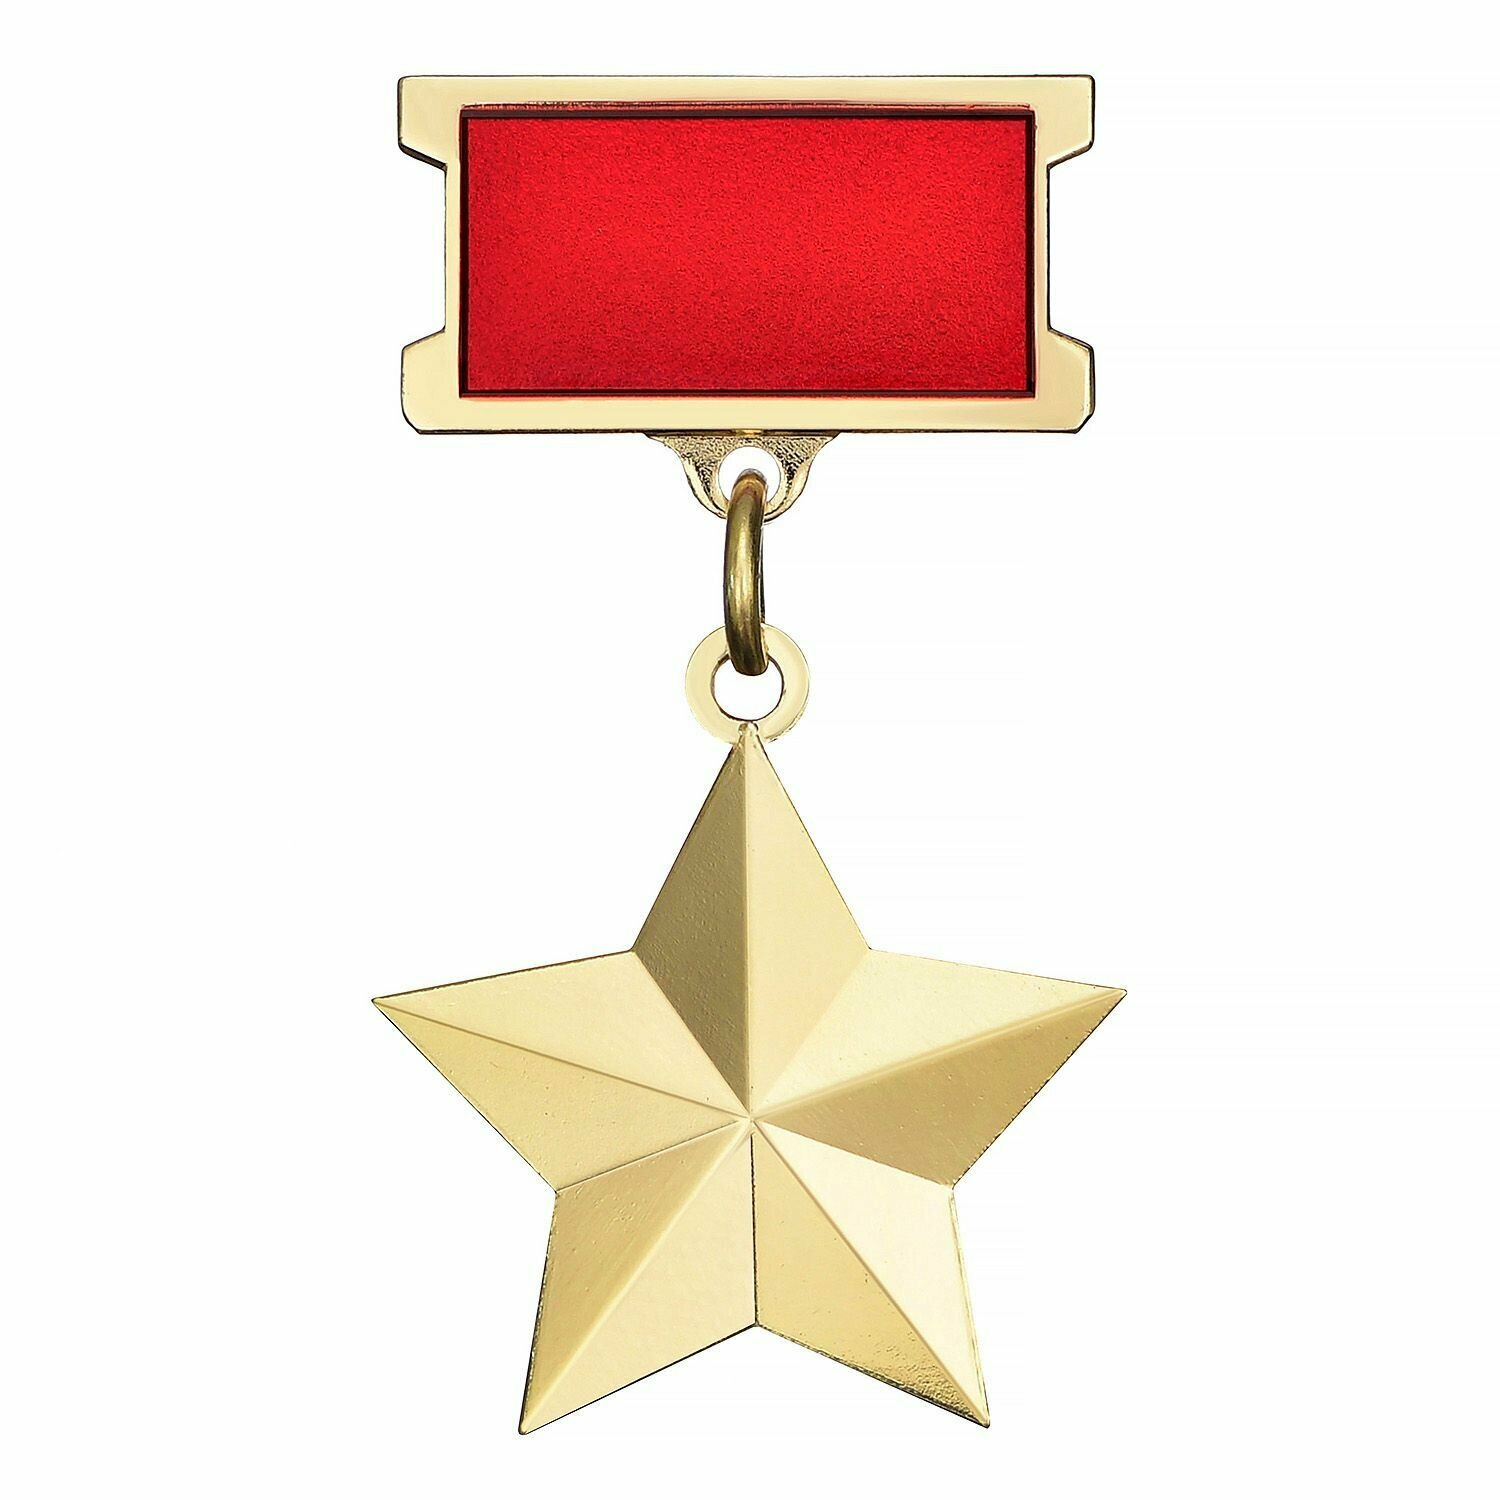 Значок Медаль Героя Советского Союза, качественный муляж, сувенир